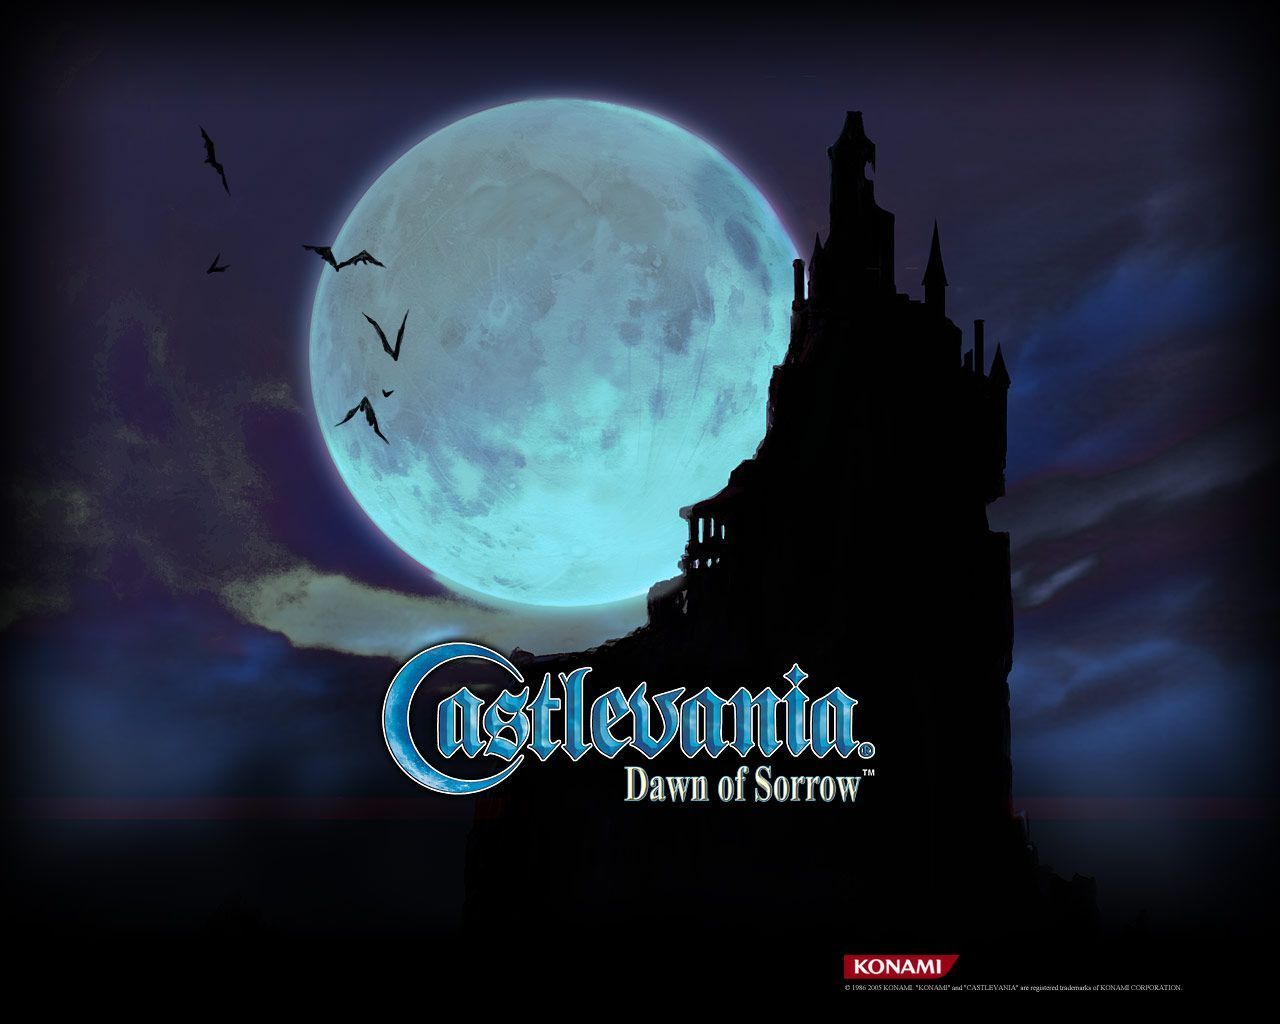 Castlevania Dawn of Sorrow Wallpaper Castlevania Crypt.com A